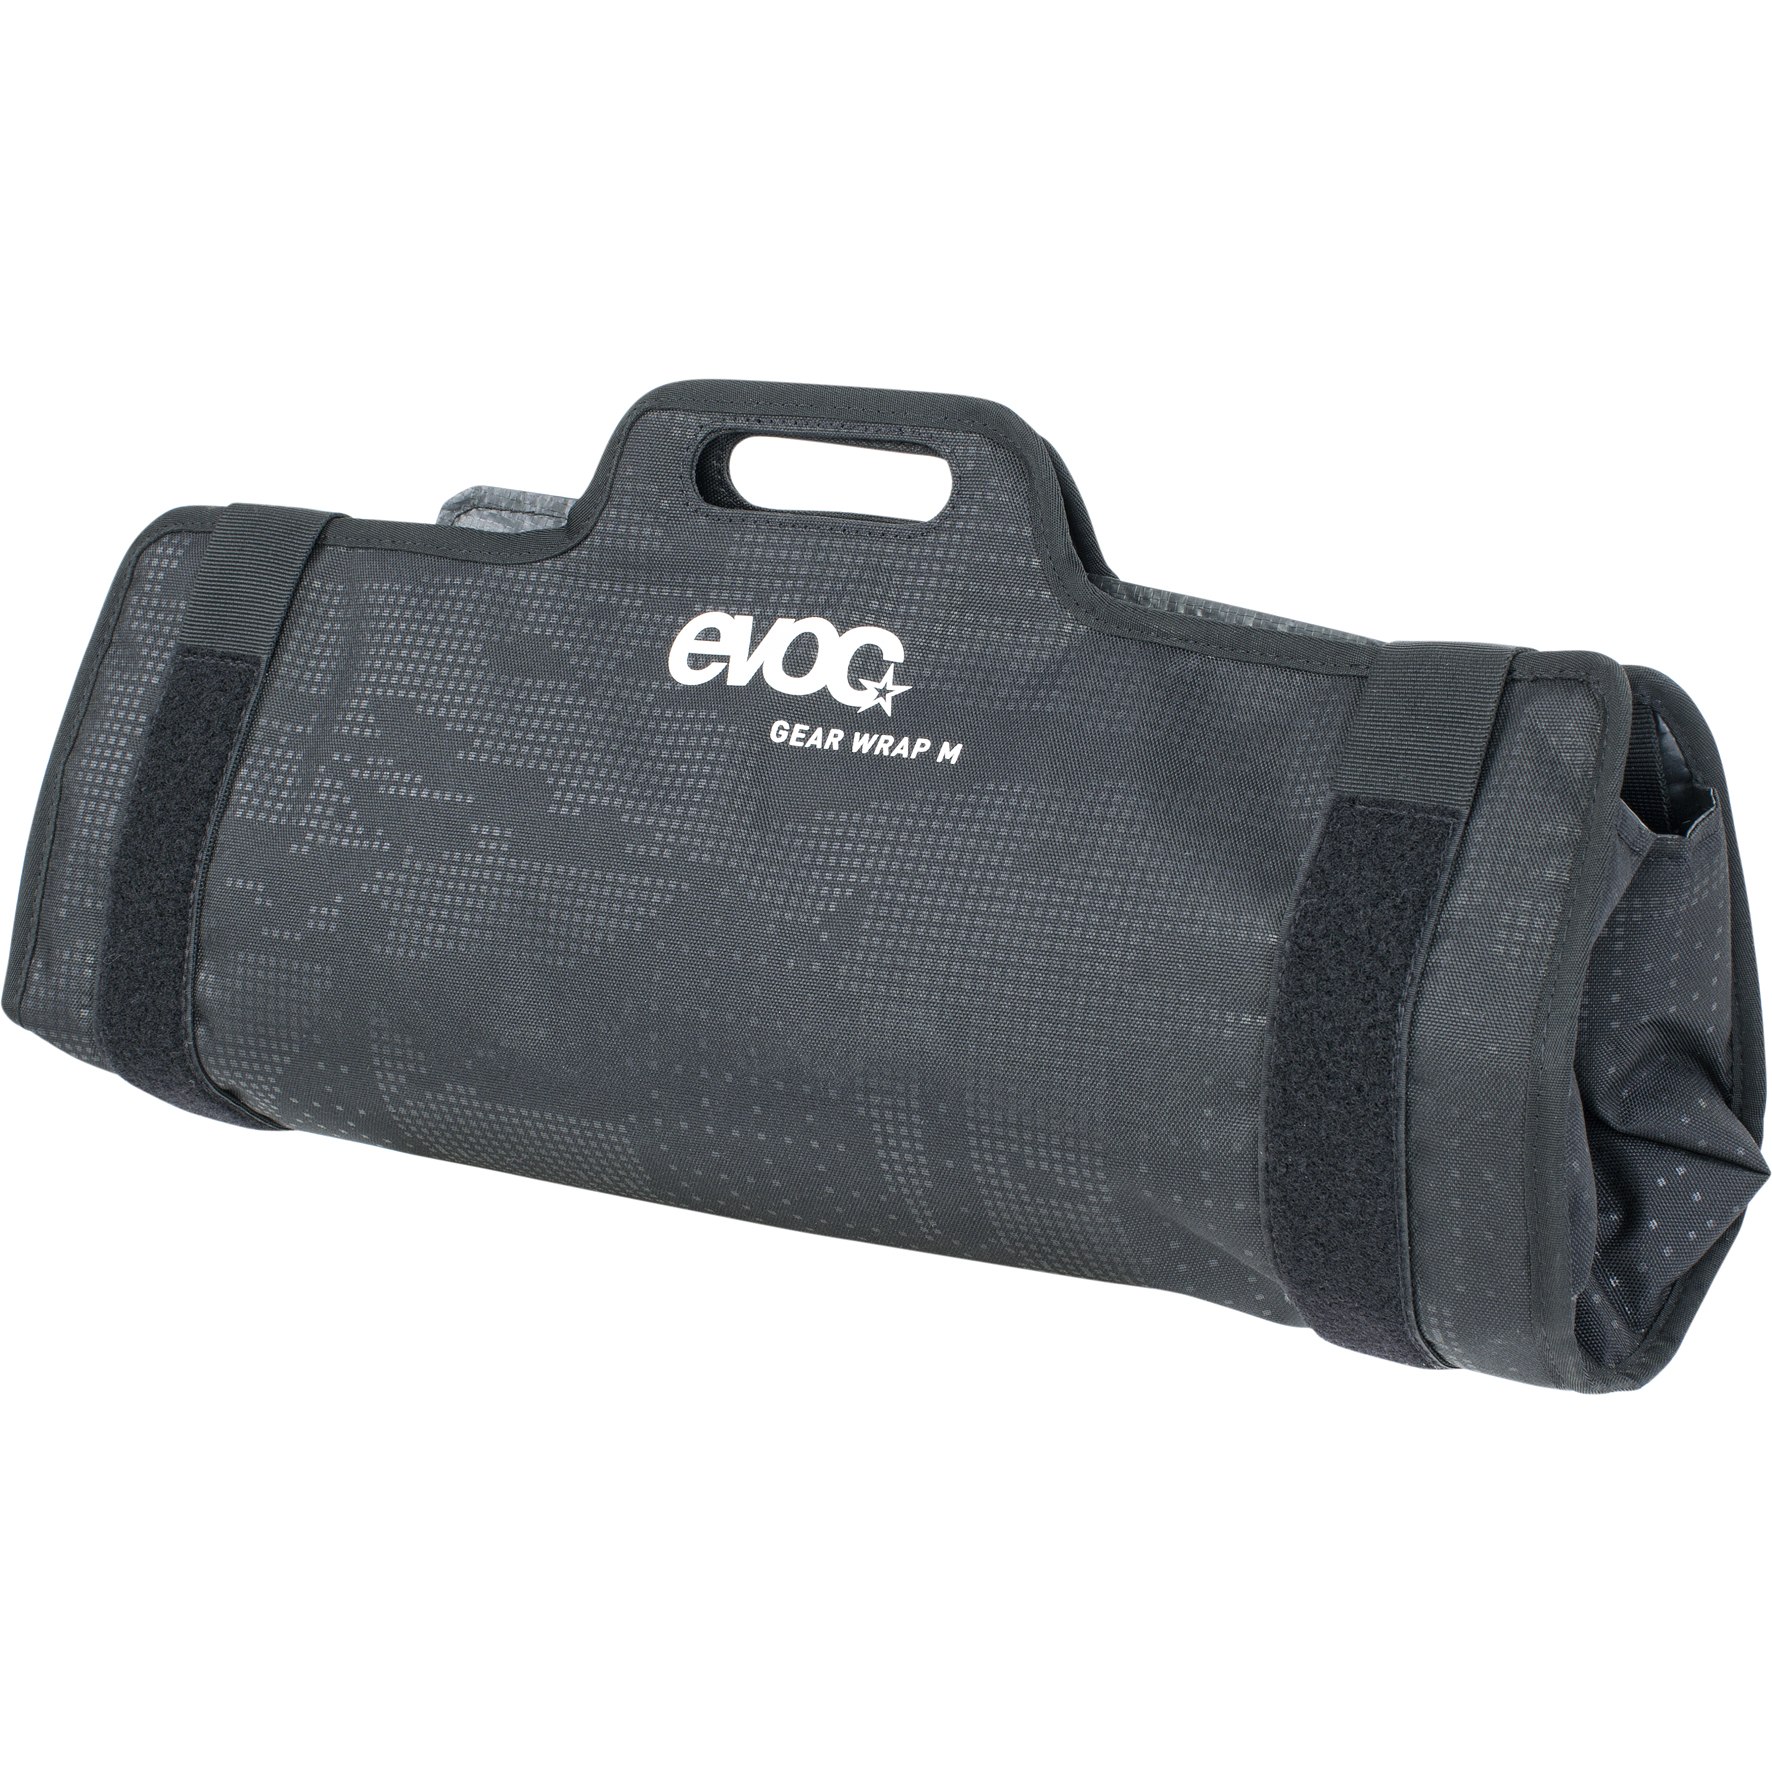 Produktbild von EVOC Gear Wrap M Werkzeugtasche - Schwarz